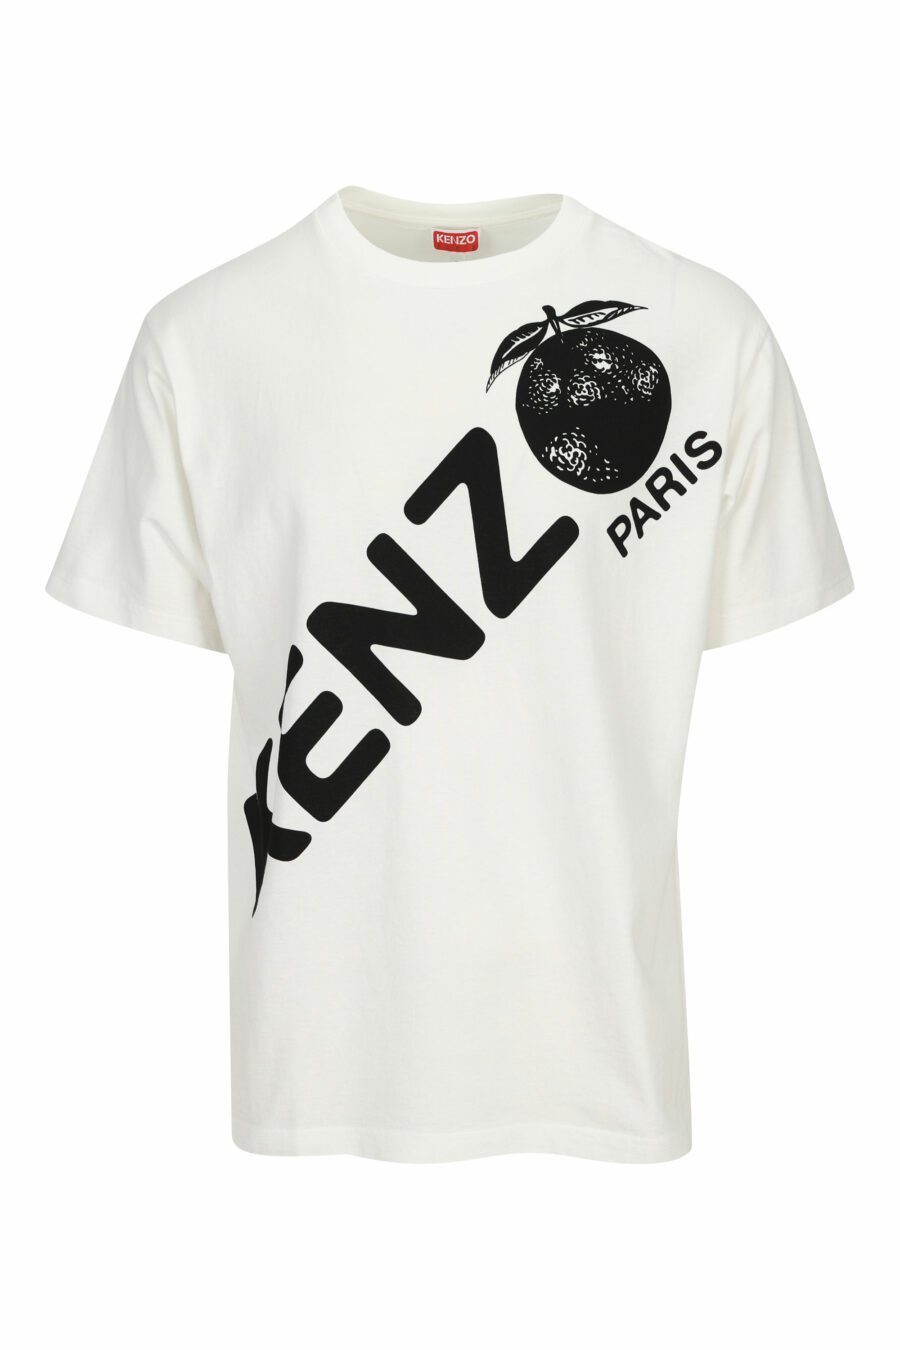 White T-shirt with diagonal maxilogo "kenzo orange" - 3612230627000